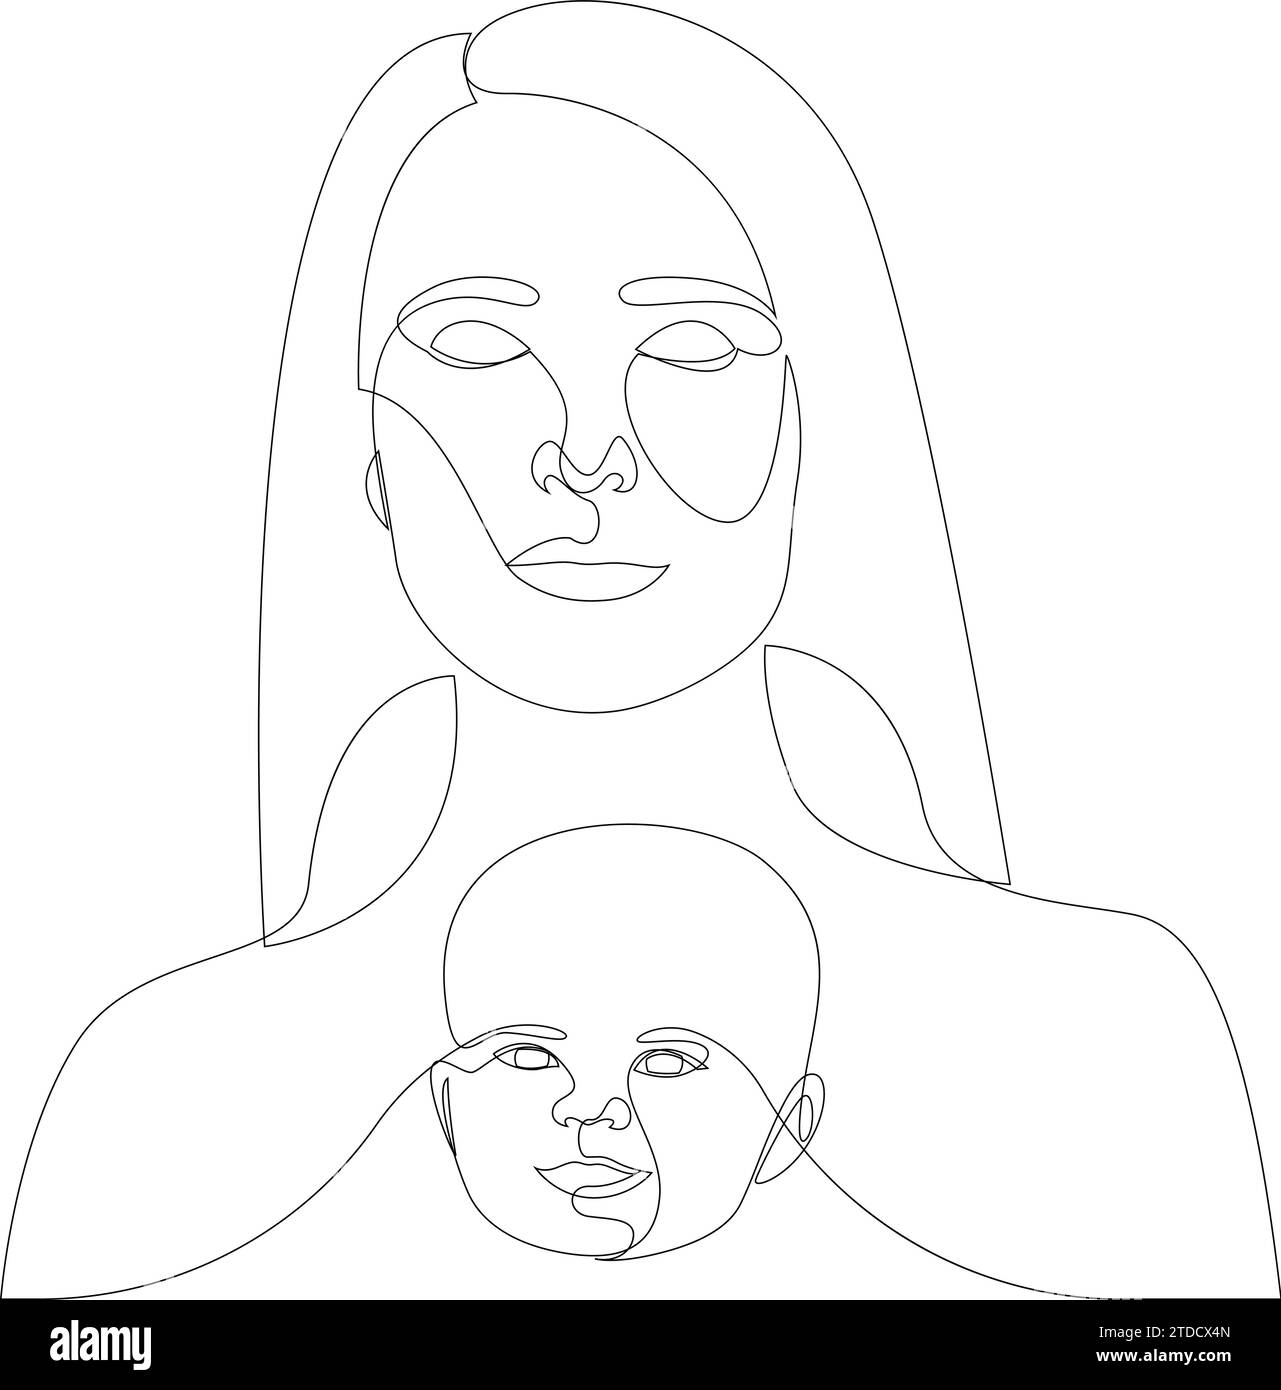 Immaturité du concept infantilistique tracé par trait continu simple. Illustration vectorielle de ligne minimaliste d'une femme avec le visage de bébé à l'intérieur. Cognitiv Illustration de Vecteur